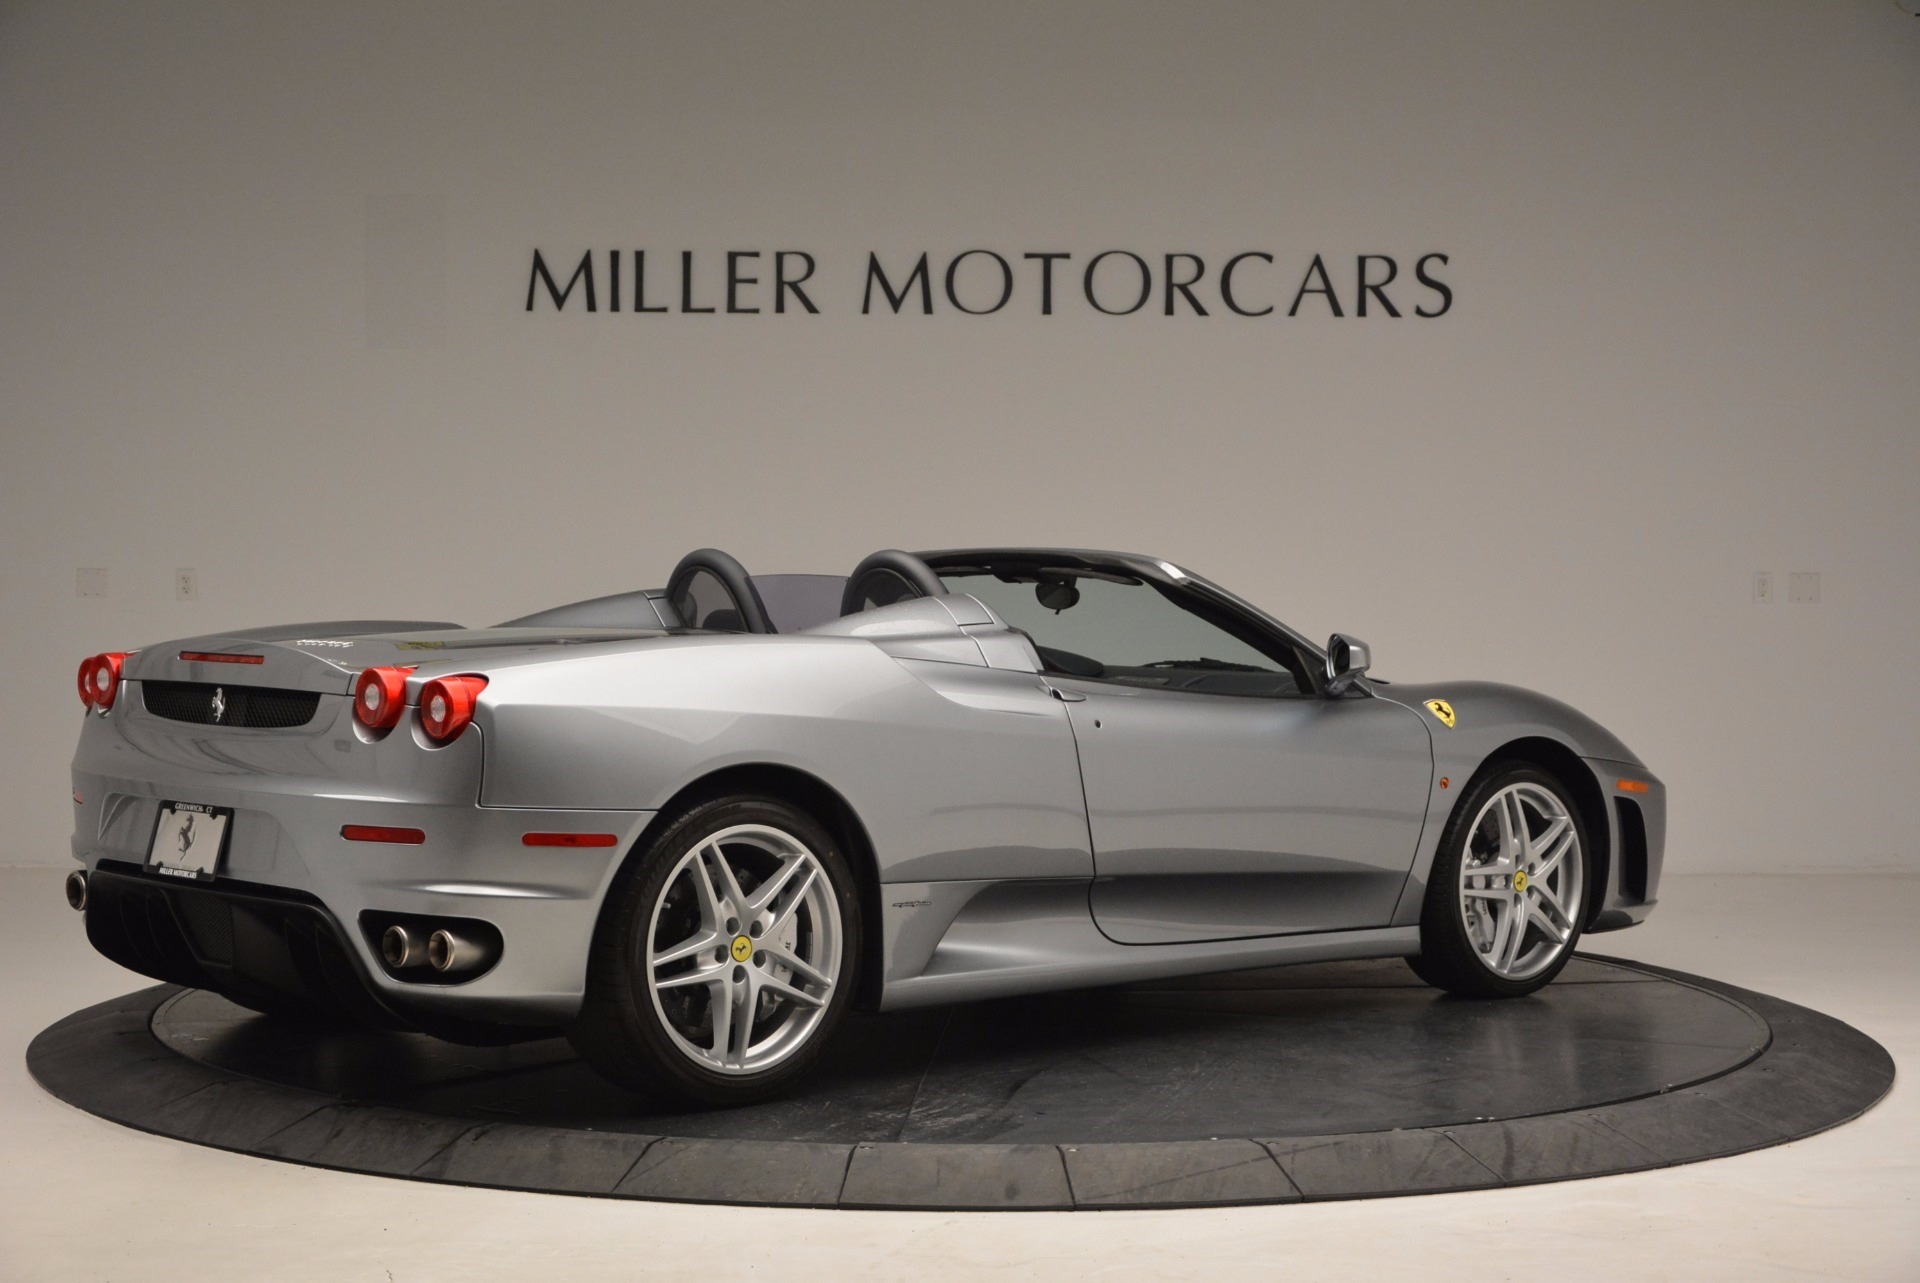 Pre Owned 2007 Ferrari F430 Spider For Sale Miller Motorcars Stock